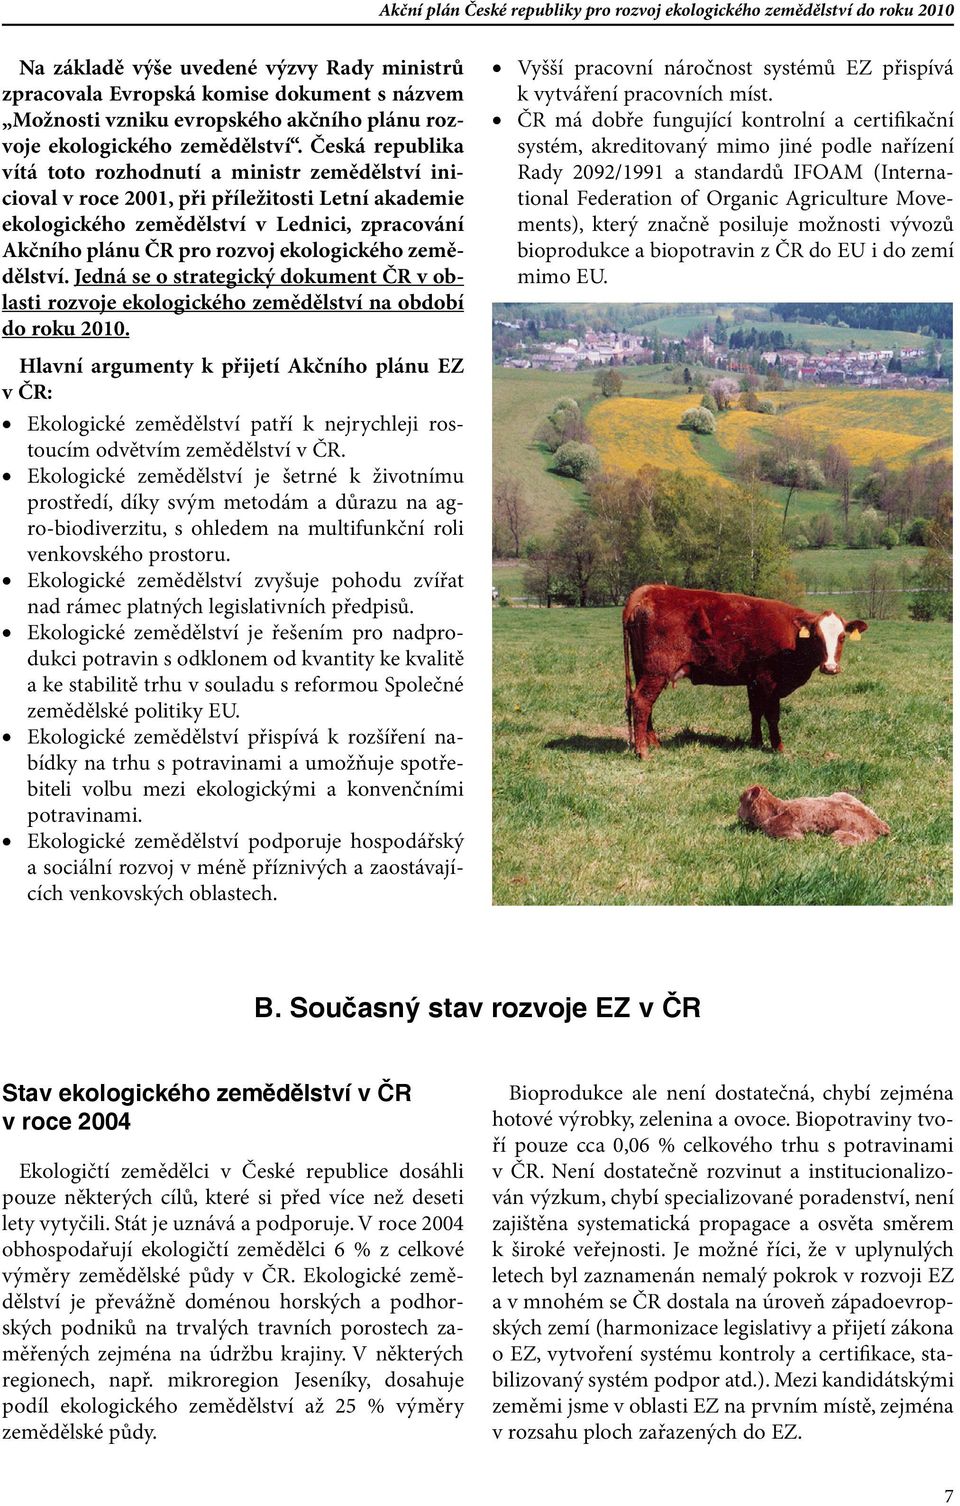 ekologického zemědělství. Jedná se o strategický dokument ČR v oblasti rozvoje ekologického zemědělství na období do roku 2010.